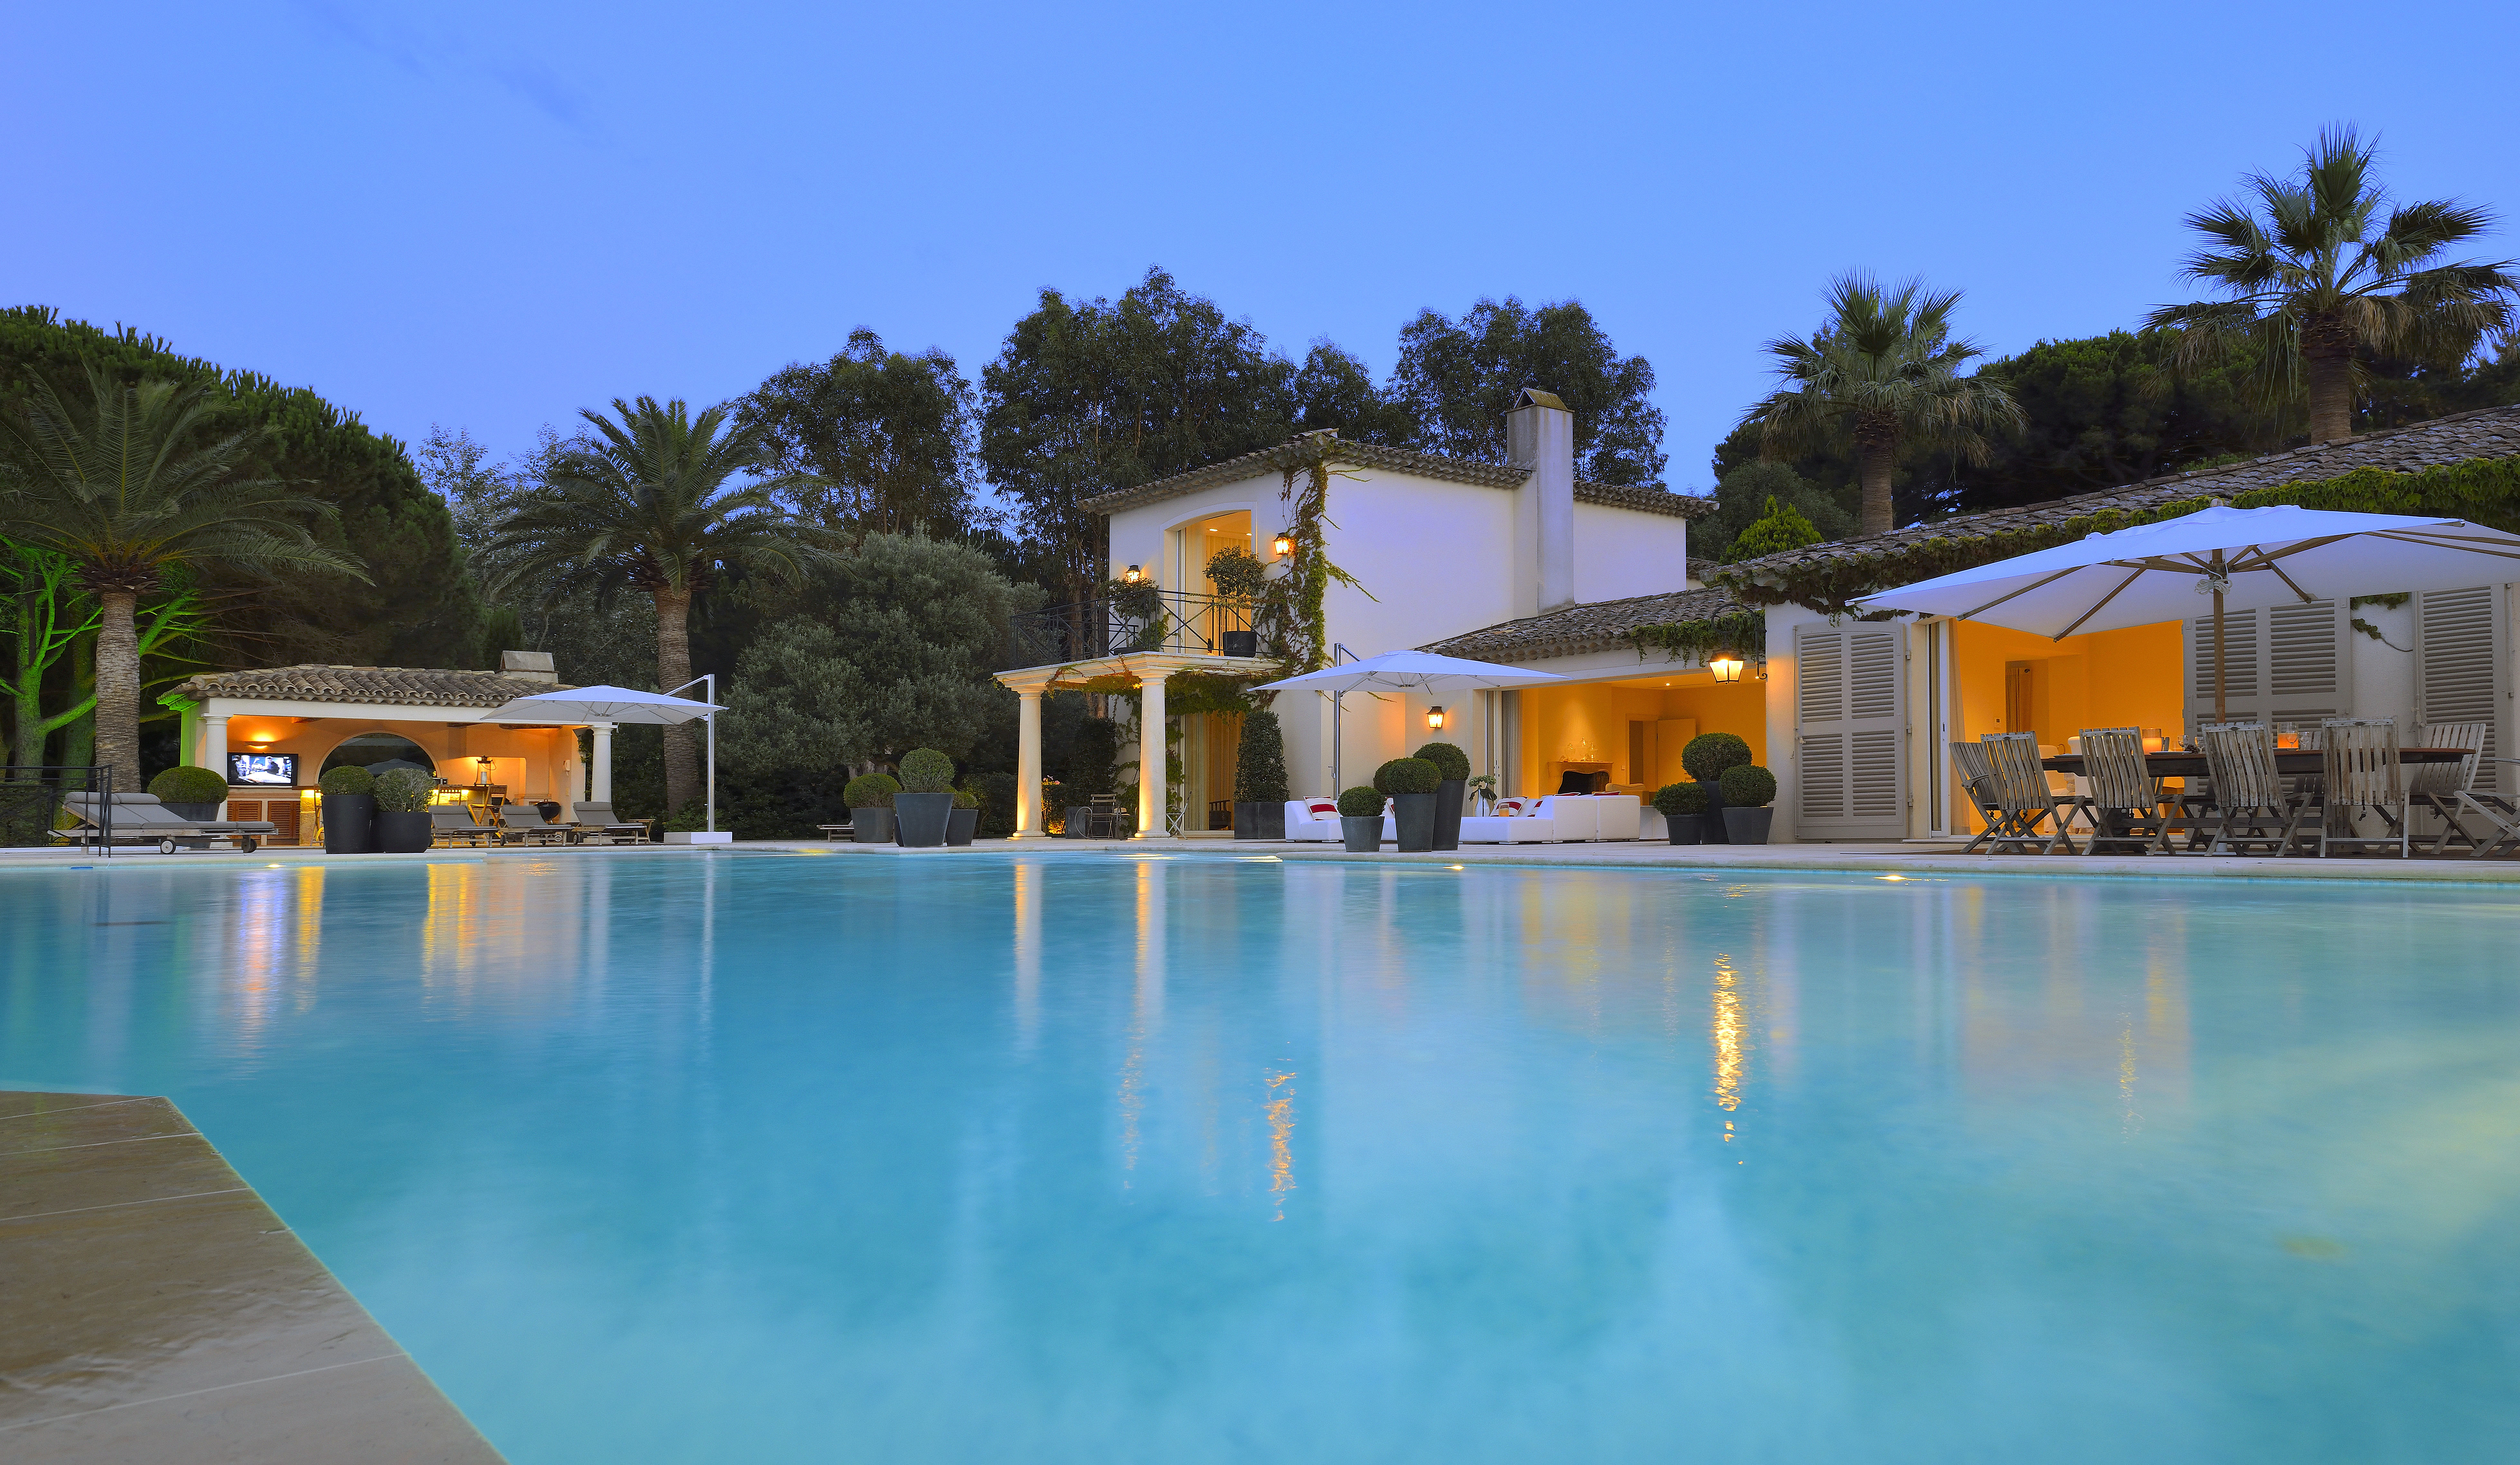 Villa Satine - A Beachfront Villa in St. Tropez